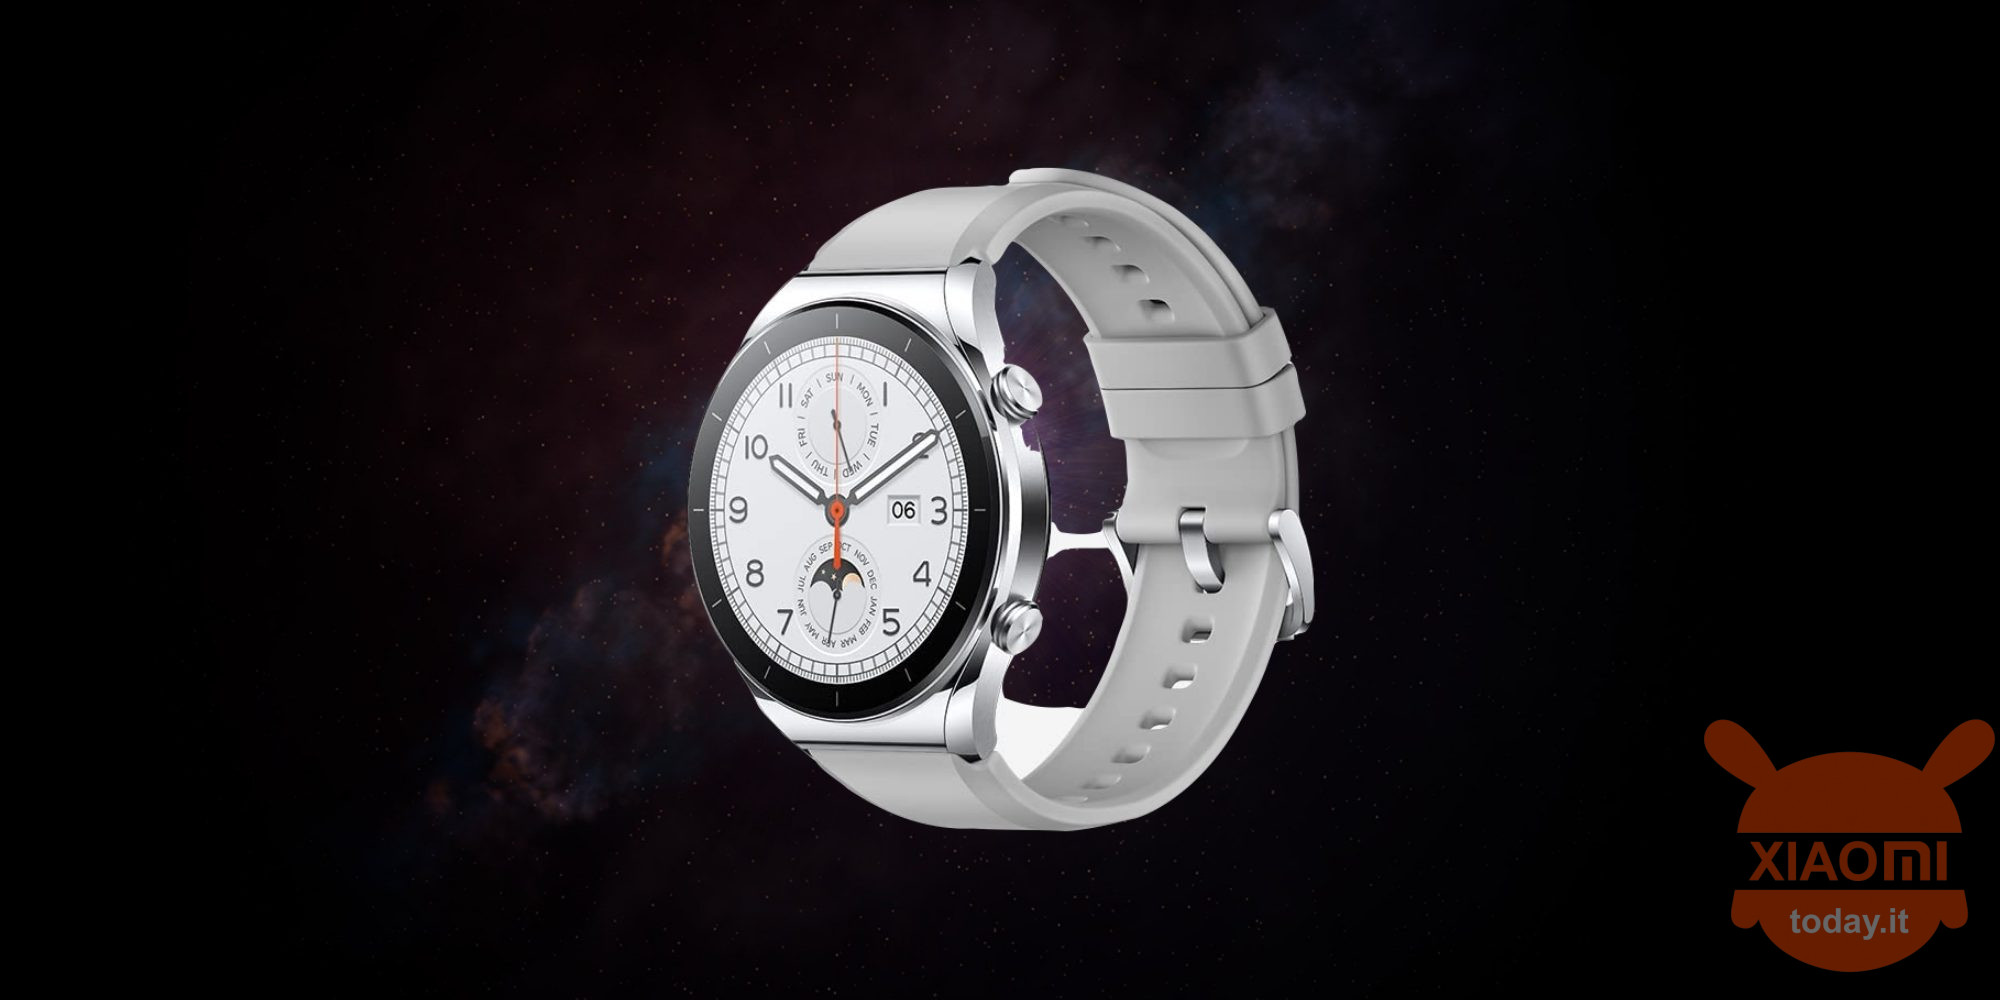 xiaomi watch s1 active specifiche, prezzo, design